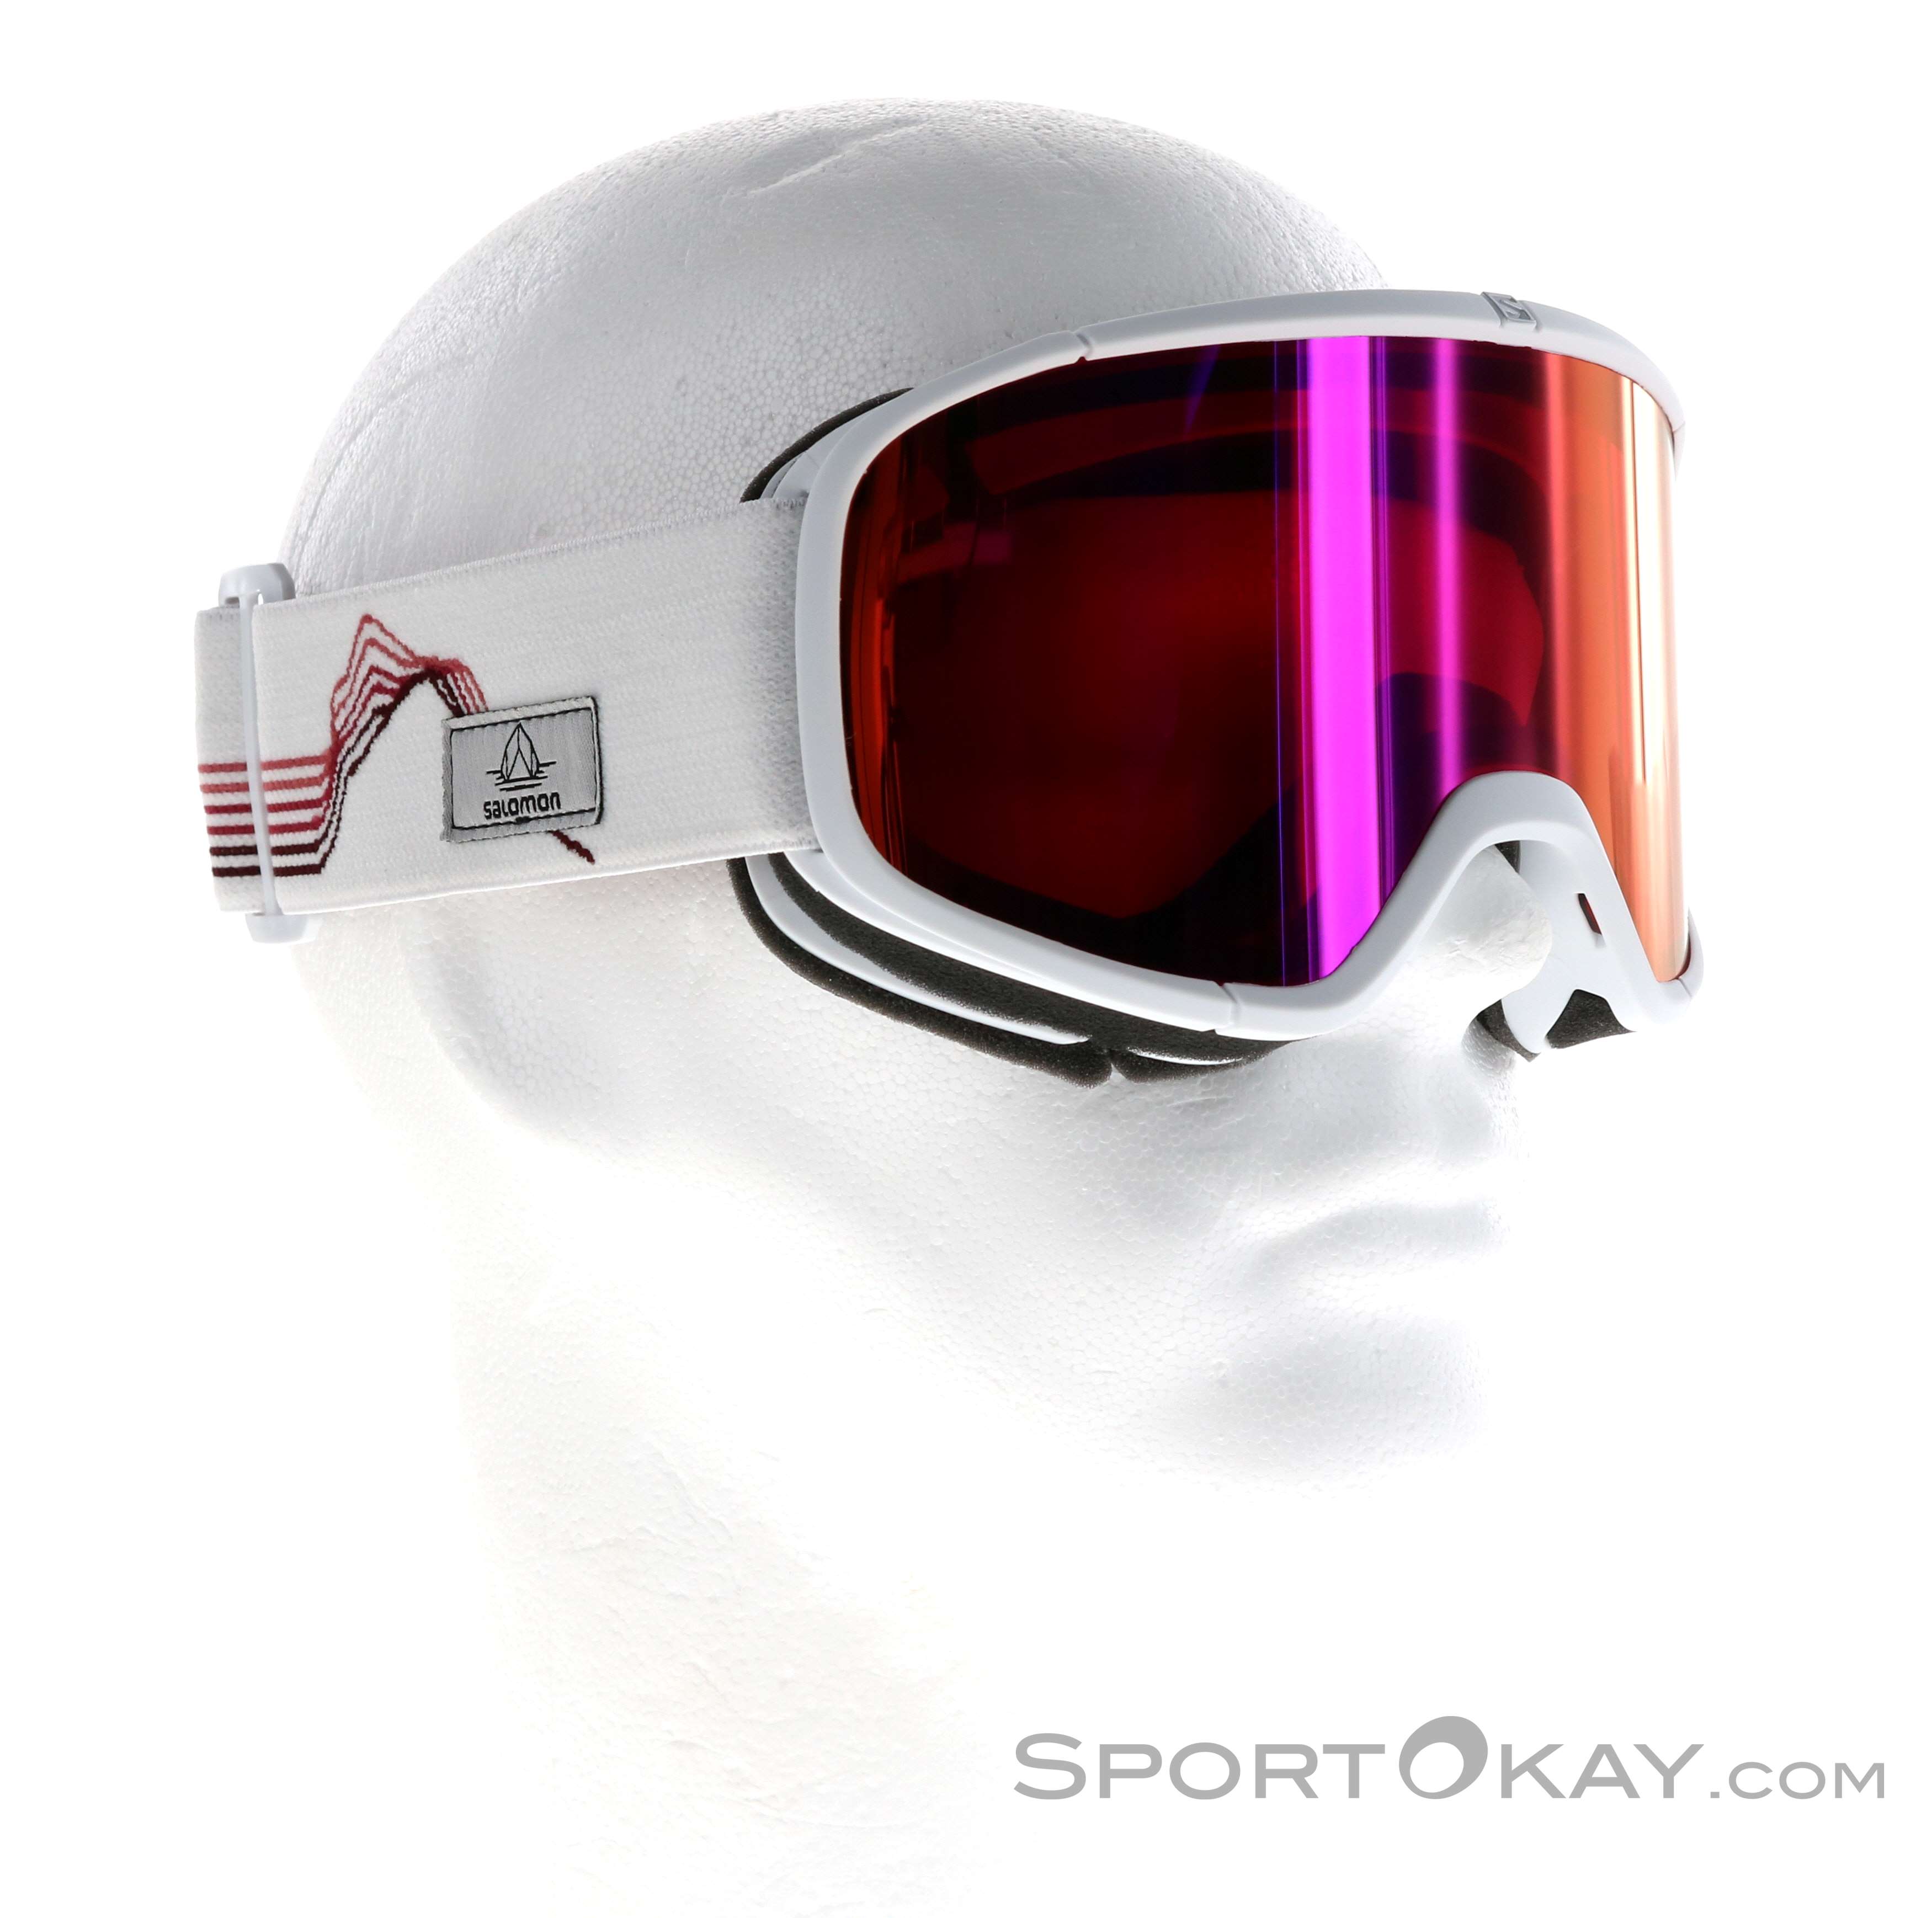 Salomon Four Seven Sigma Ski - Ski Googles - Glasses - Ski Touring - All